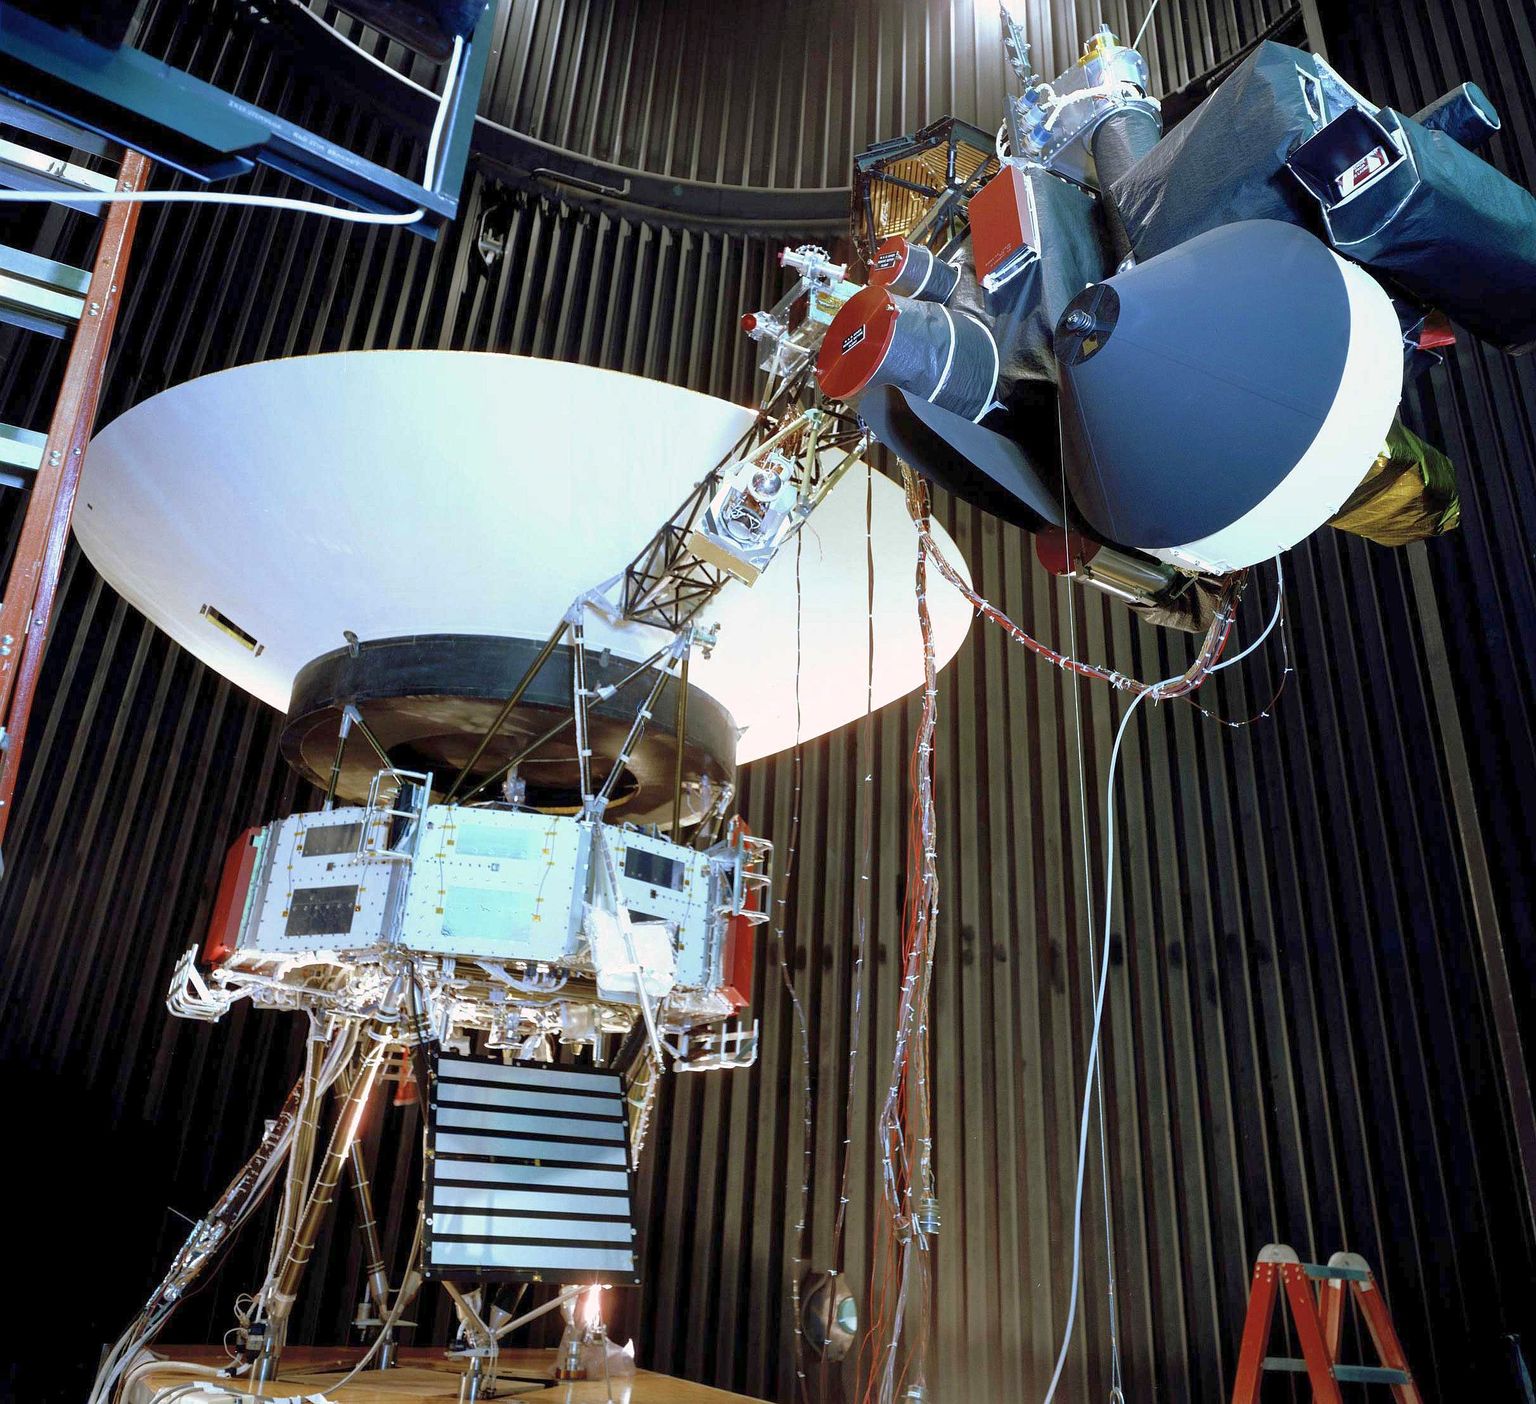 Pildil on NASA kosmoselaevade Voyager maapealne makett, mis jäljendab täpselt kosmosesse saadetud aparaate. Paremal pika masti otsas on teadusinstrumendid, mis kosmoses olevatel Voyageridel ikka veel töötavad, välja arvatud üks instrument Voyager 1 pardal.